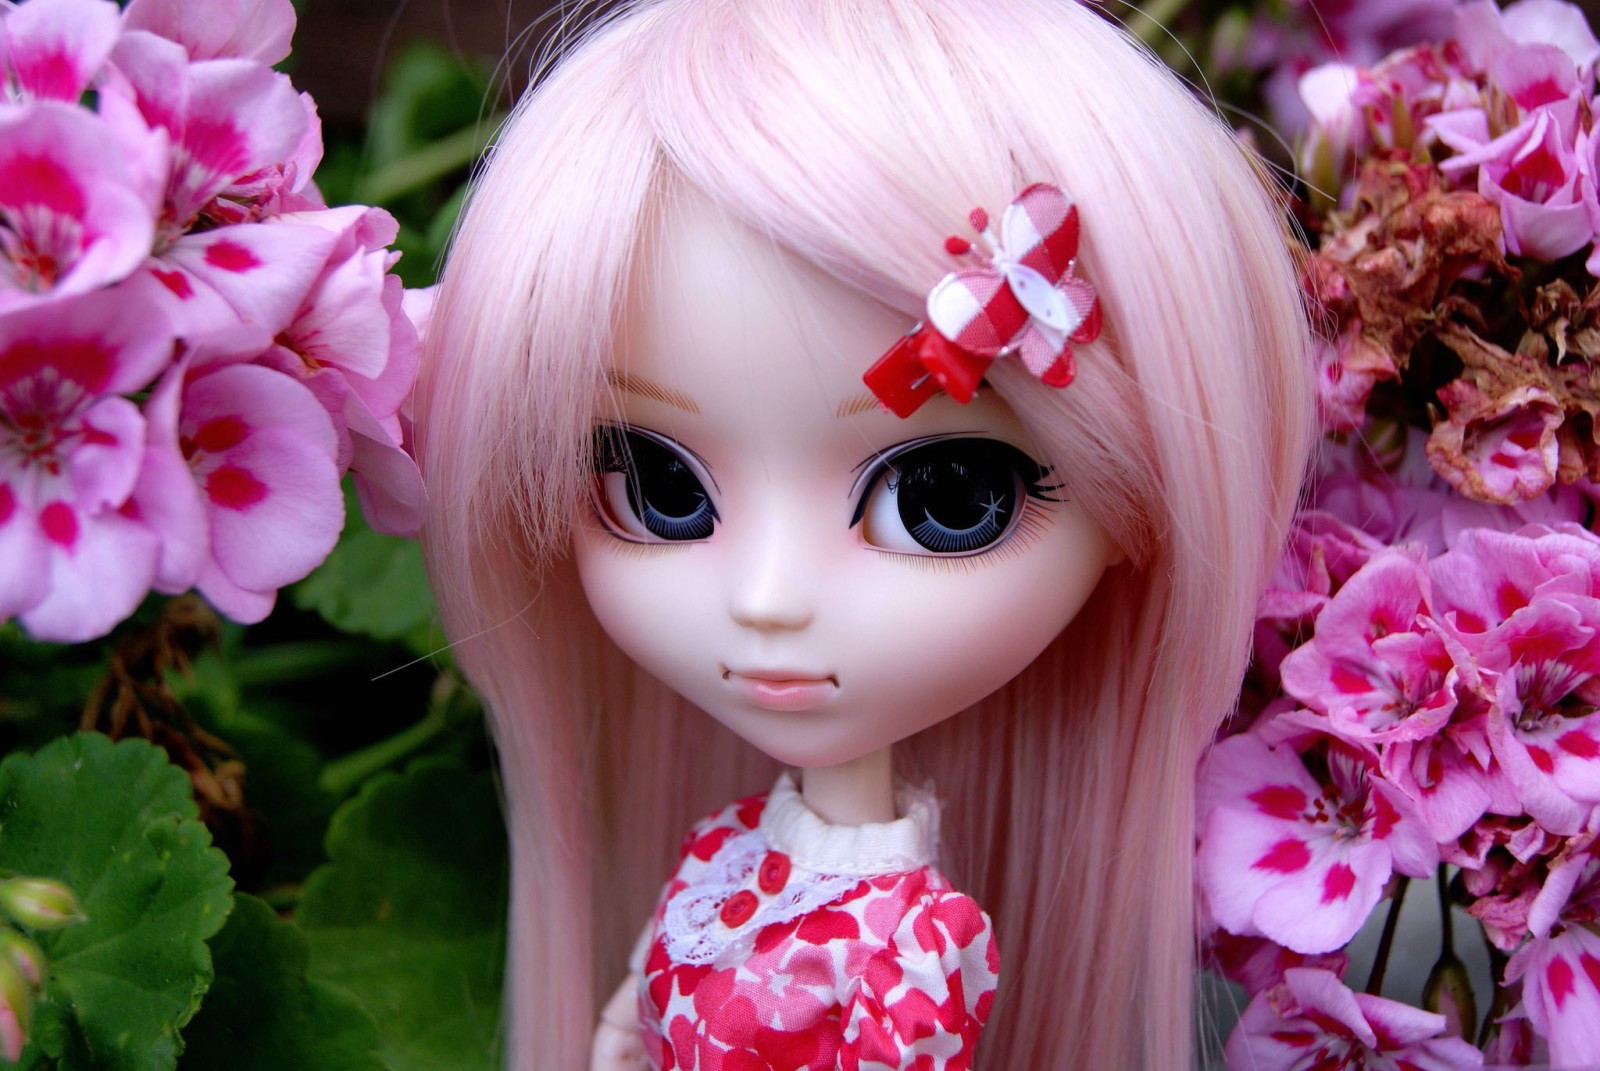 꽃들, 장난감, 인형, 분홍색 머리, 바렛